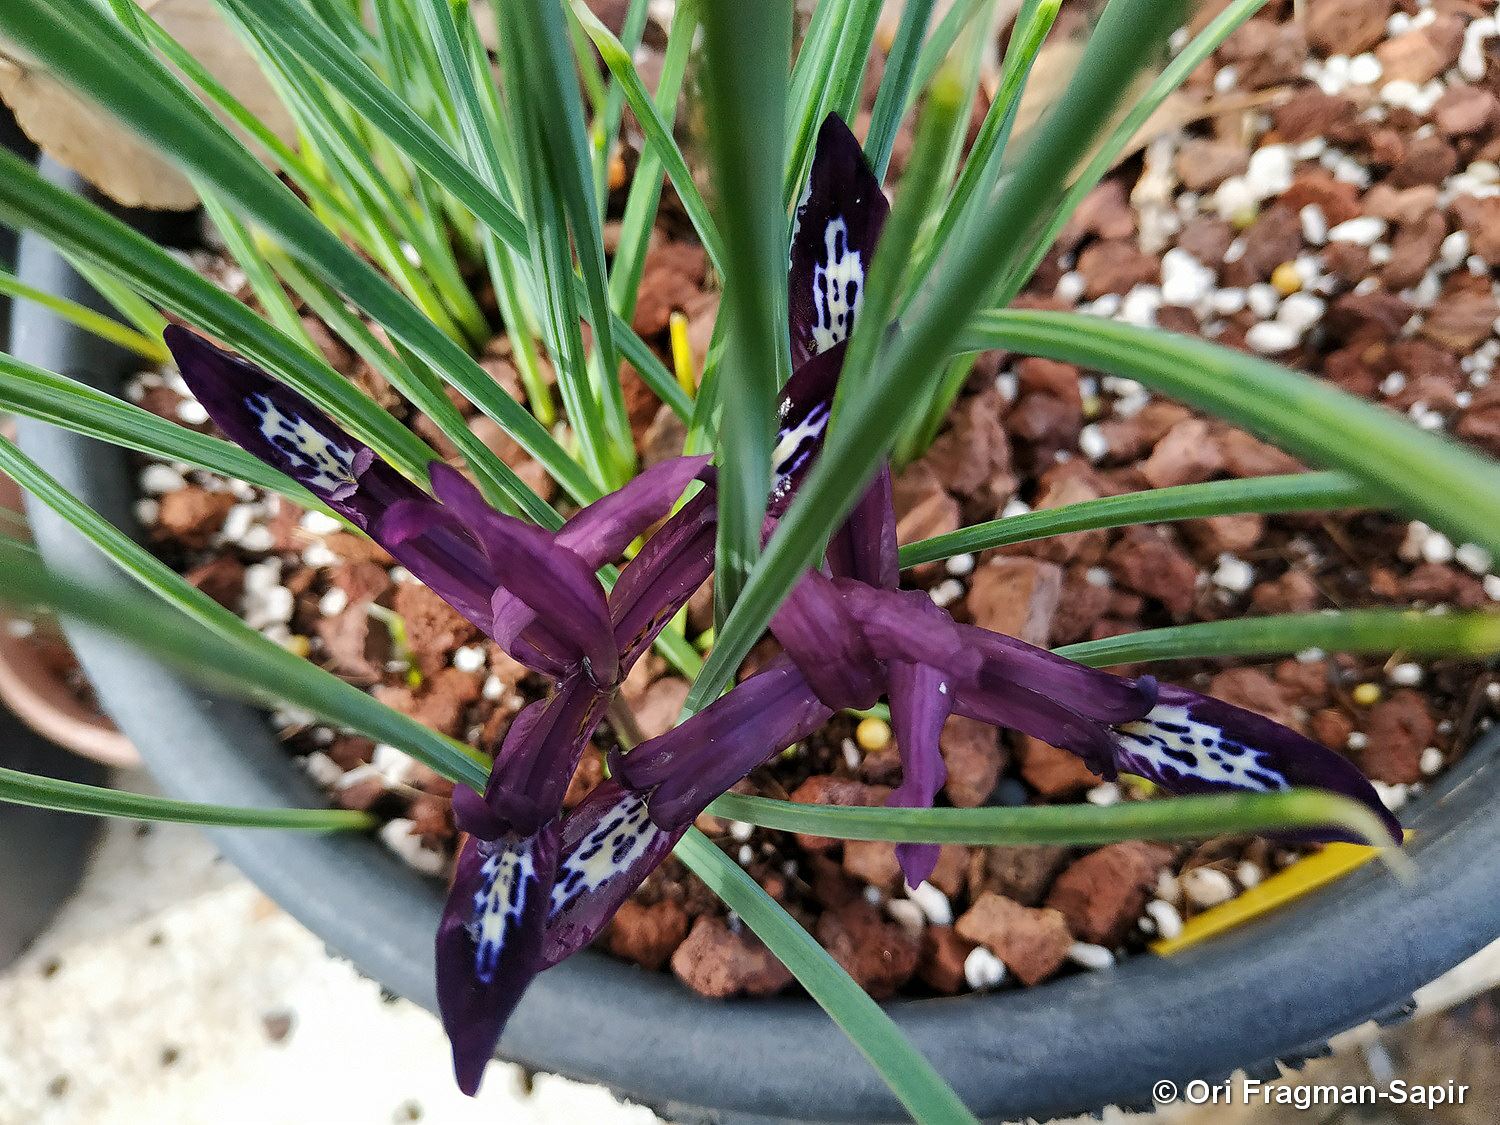 Iris reticulata 'Pauline' - Netted Iris 'Pauline', Reticulated Iris 'Pauline', איריס מרושת 'פאולינה', איריס מרושת 'פאולינה'